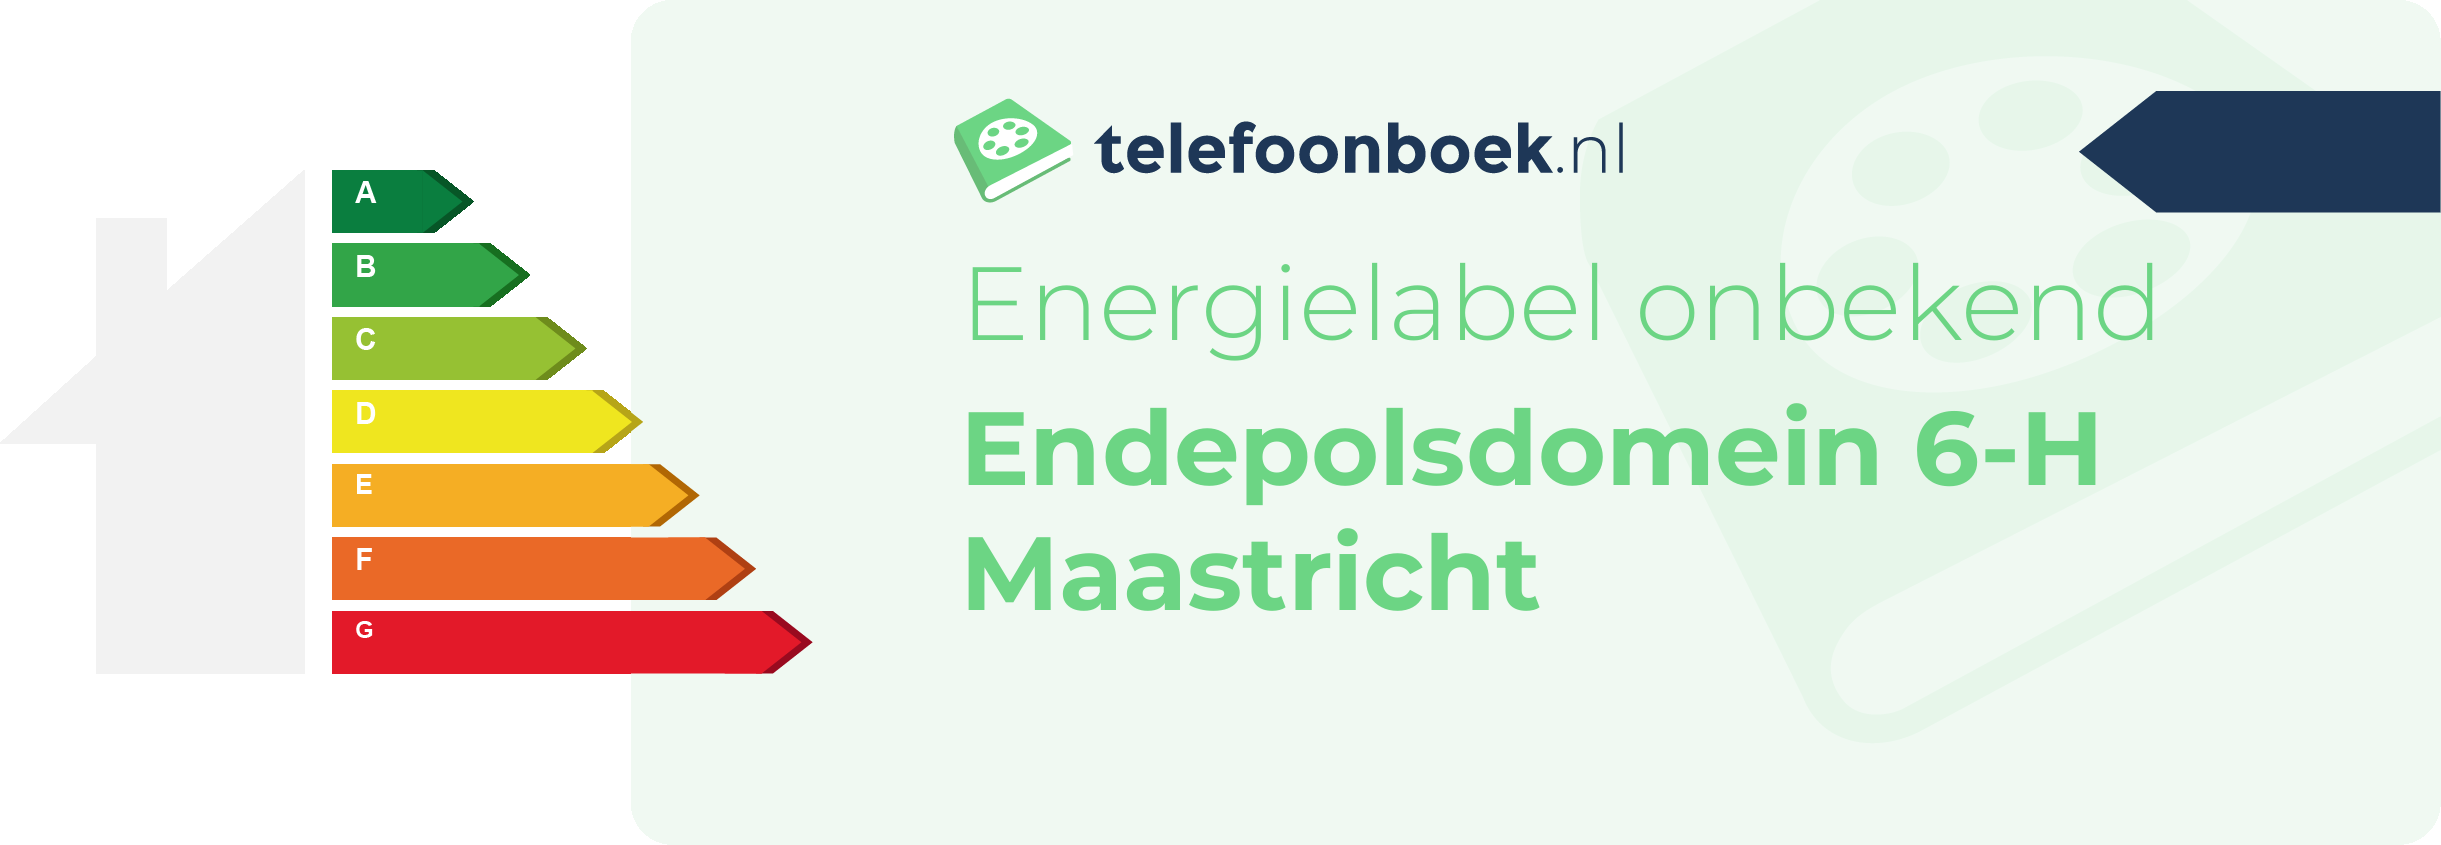 Energielabel Endepolsdomein 6-H Maastricht